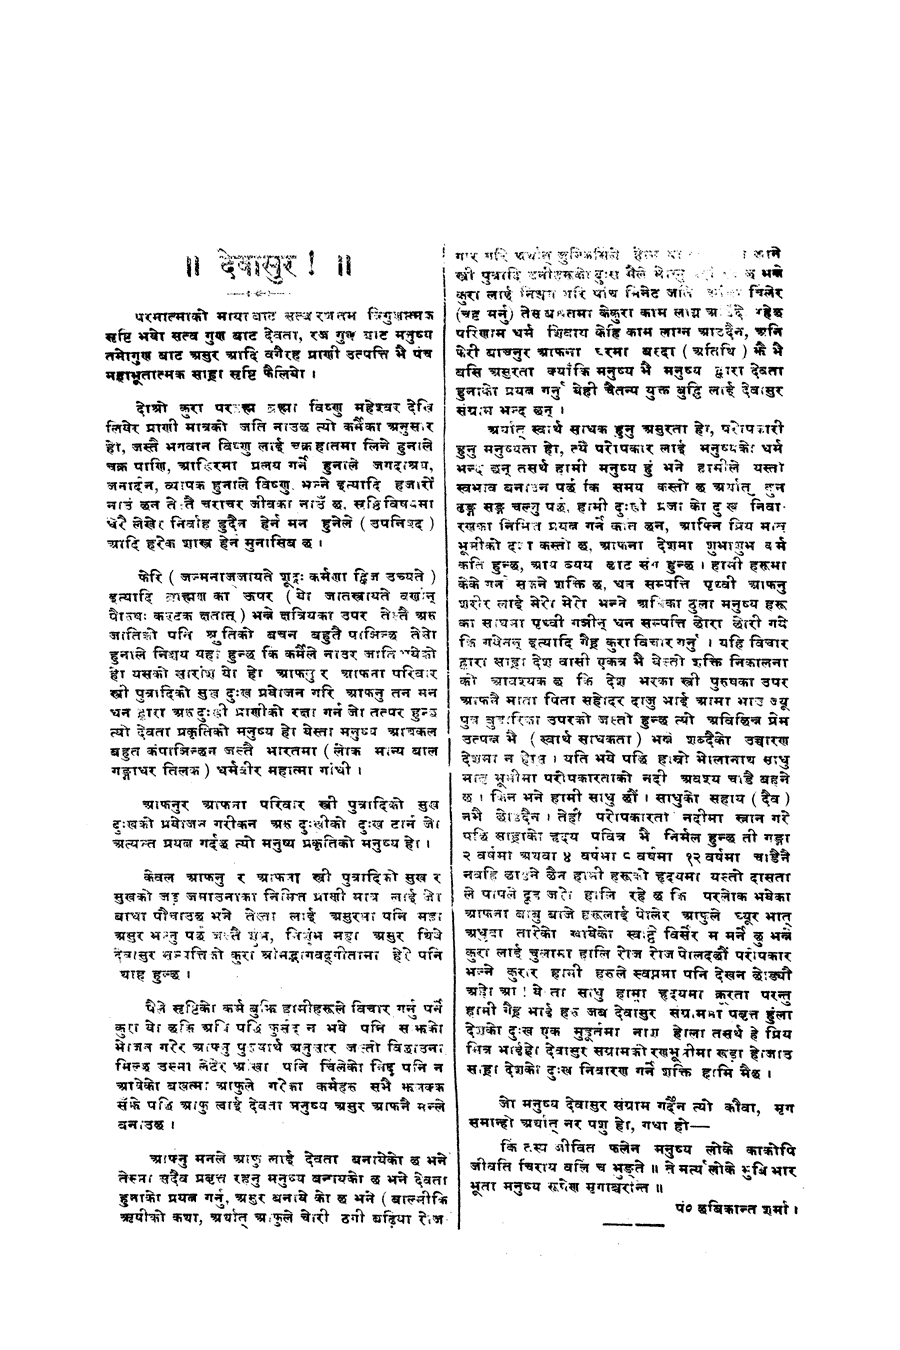 Gorkha Sansar, 10 Jan 1928, page 2